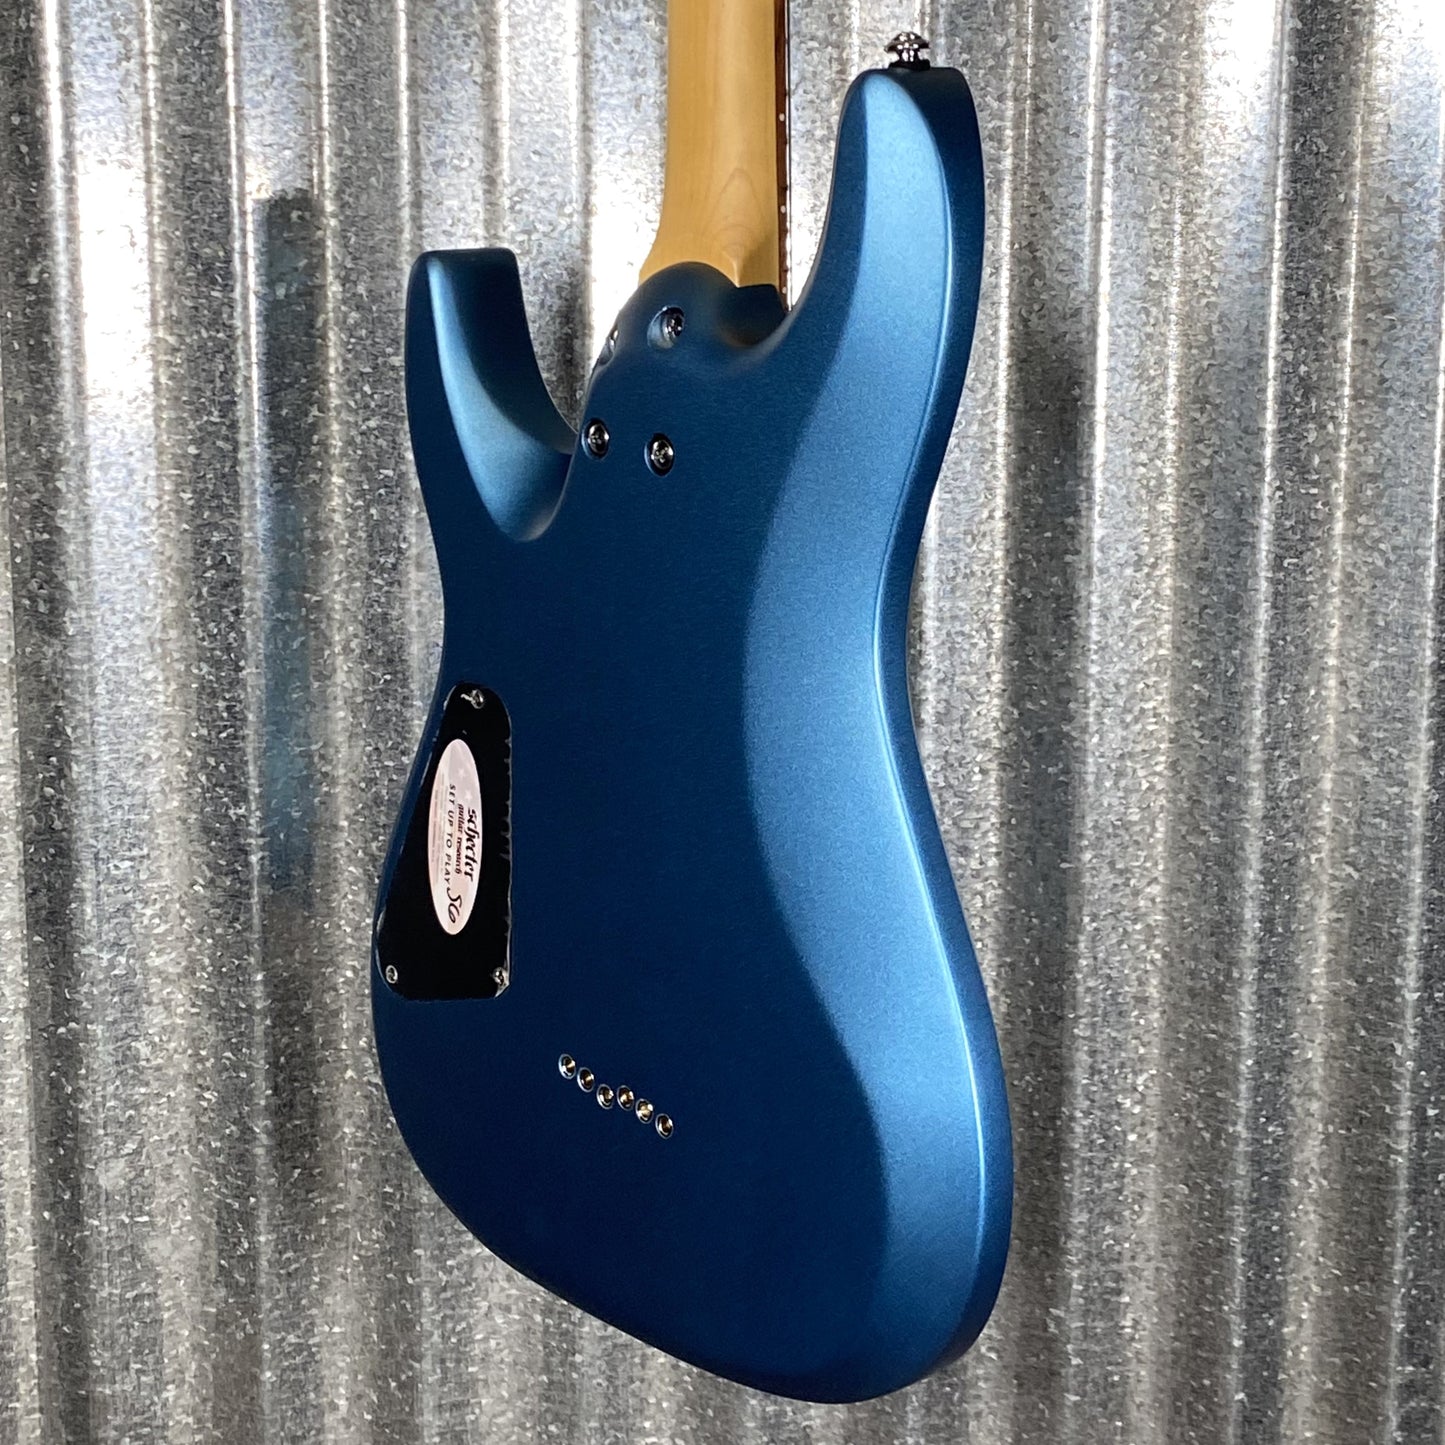 Schecter C-6 Deluxe Satin Metallic Light Blue Guitar #0539